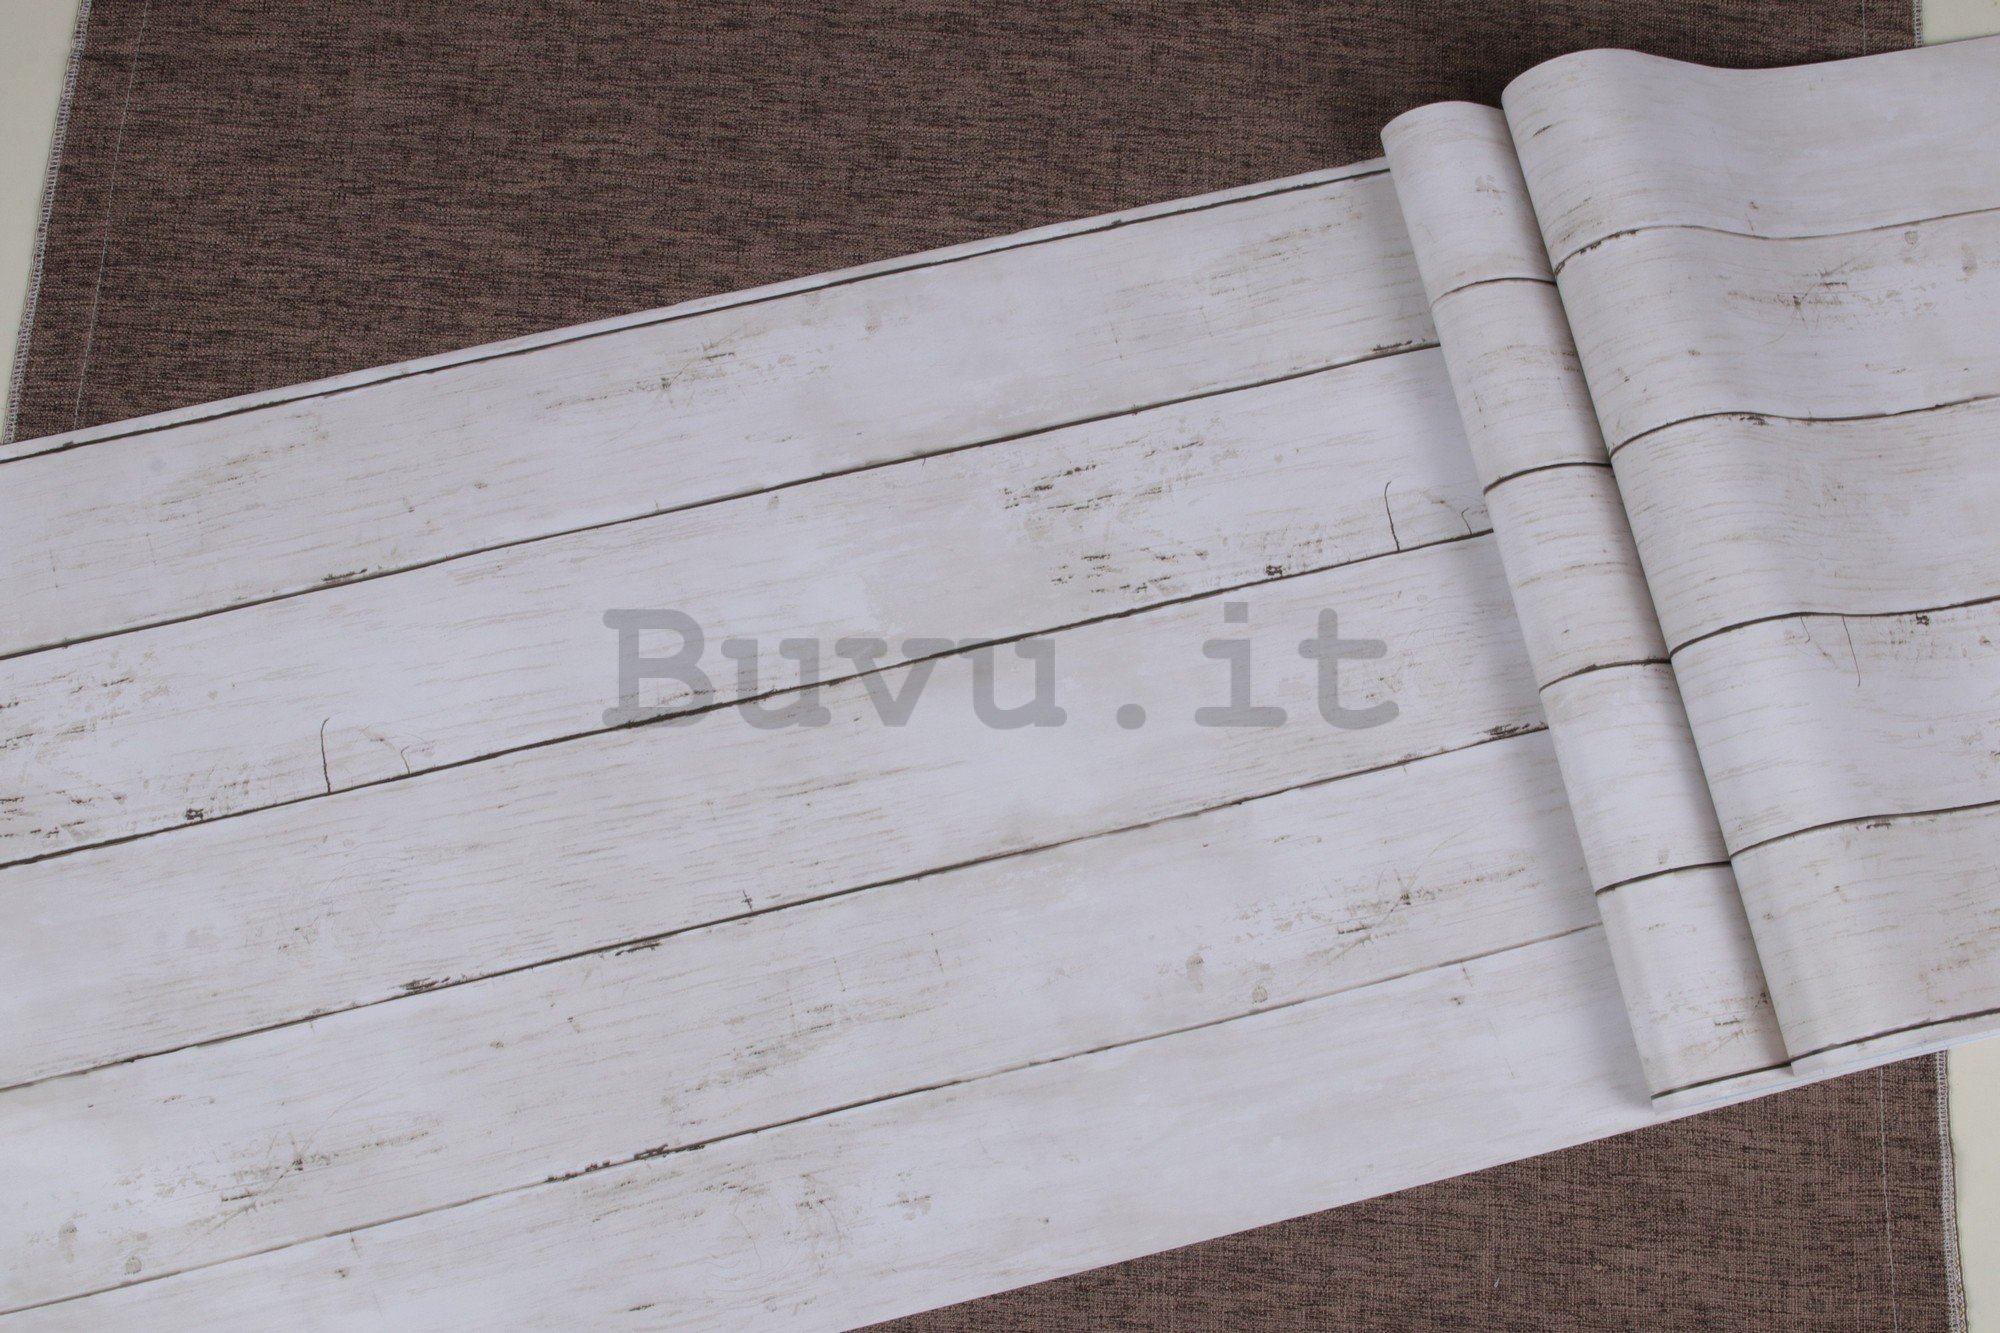 Pellicola murale autoadesiva decoro legno bianco decoro legno bianco (1) 45cm x 3m